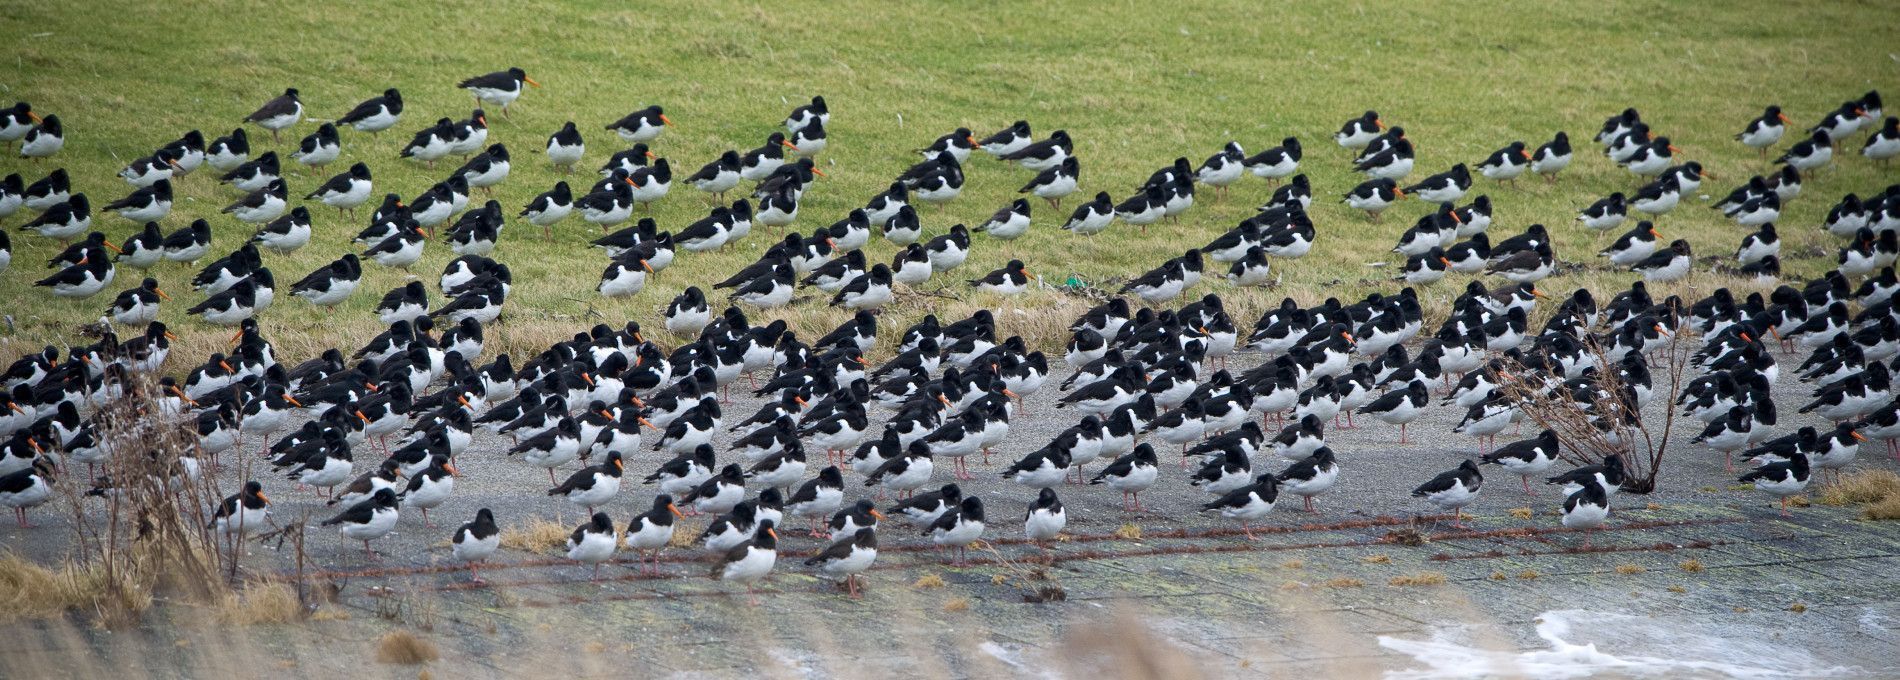 Vögel auf Ameland - VVV Ameland